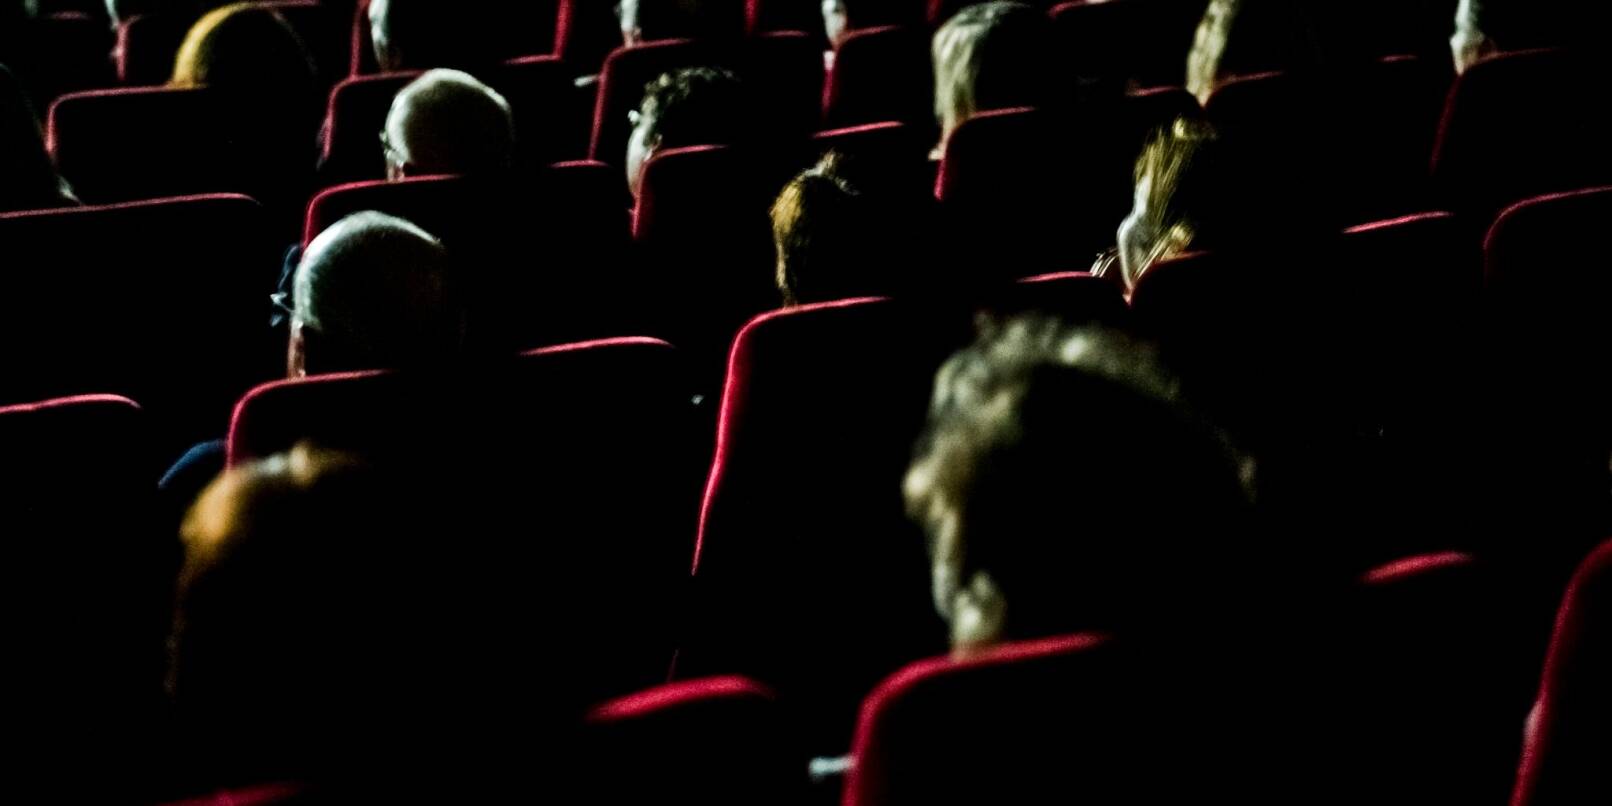 Besucher der Caligari Filmbühne.